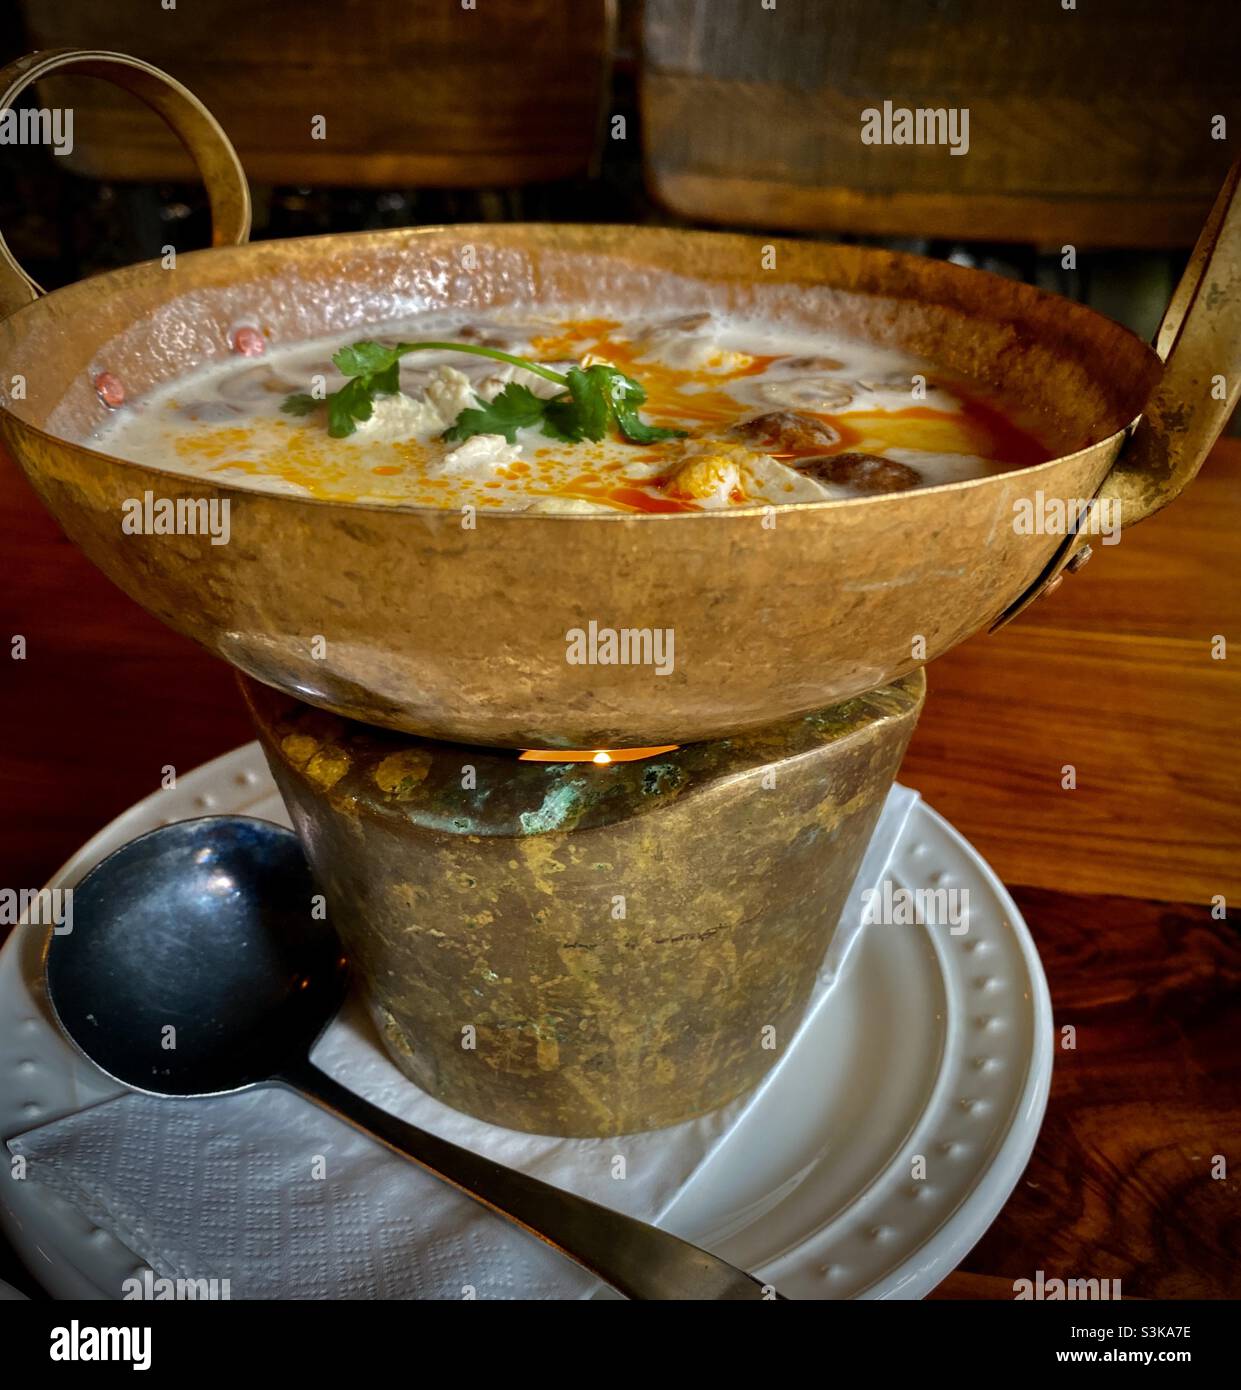 Soupe Thom Kha.Une soupe aigre et chaude thaïlandaise classique à base de lait de coco.Souvent avec des fruits de mer, du poulet ou d'autres viandes. Banque D'Images